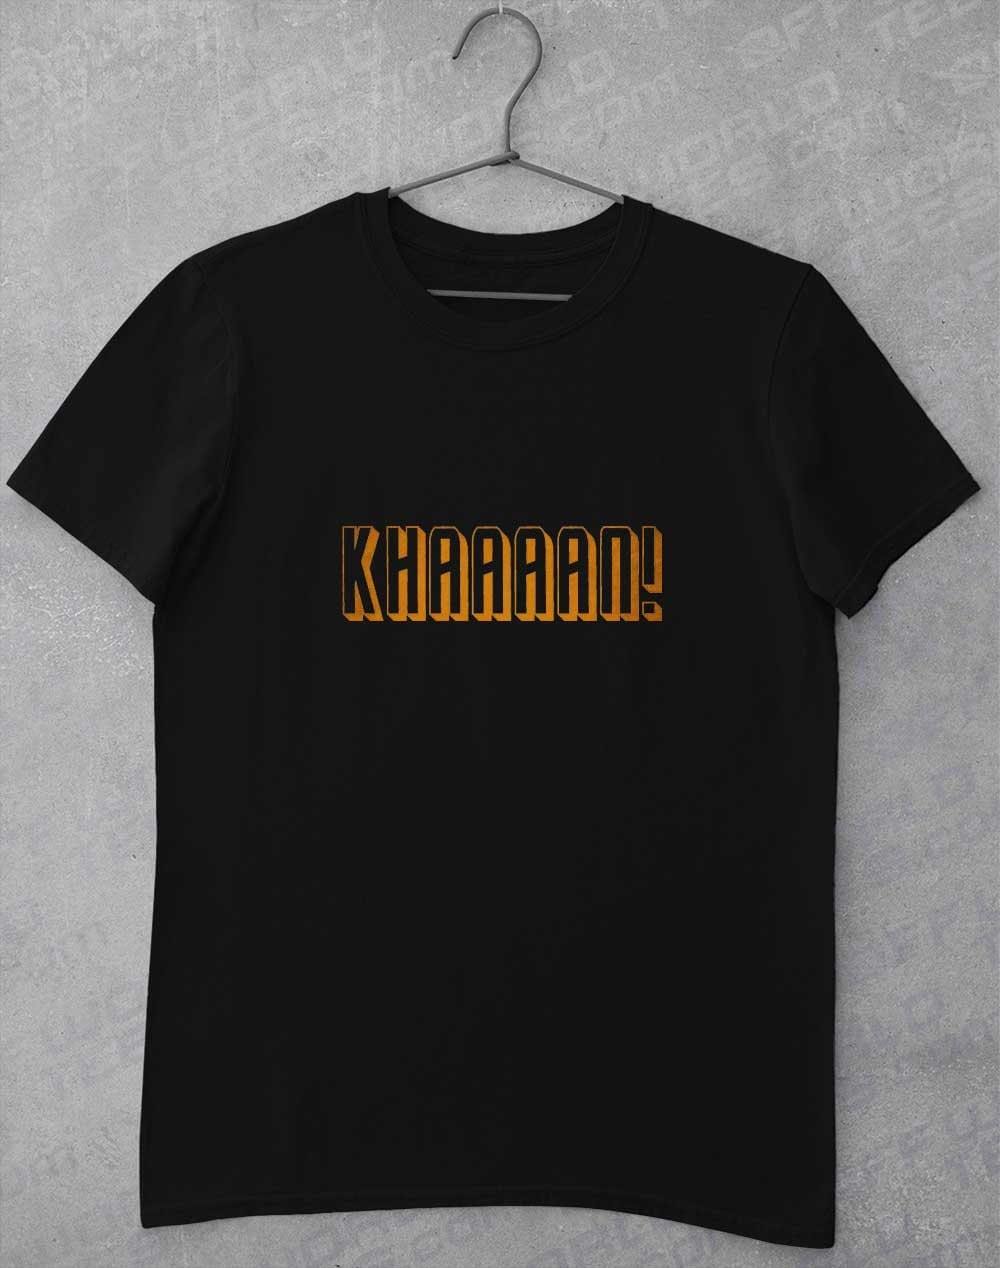 KHAAAAAN T-Shirt S / Black  - Off World Tees